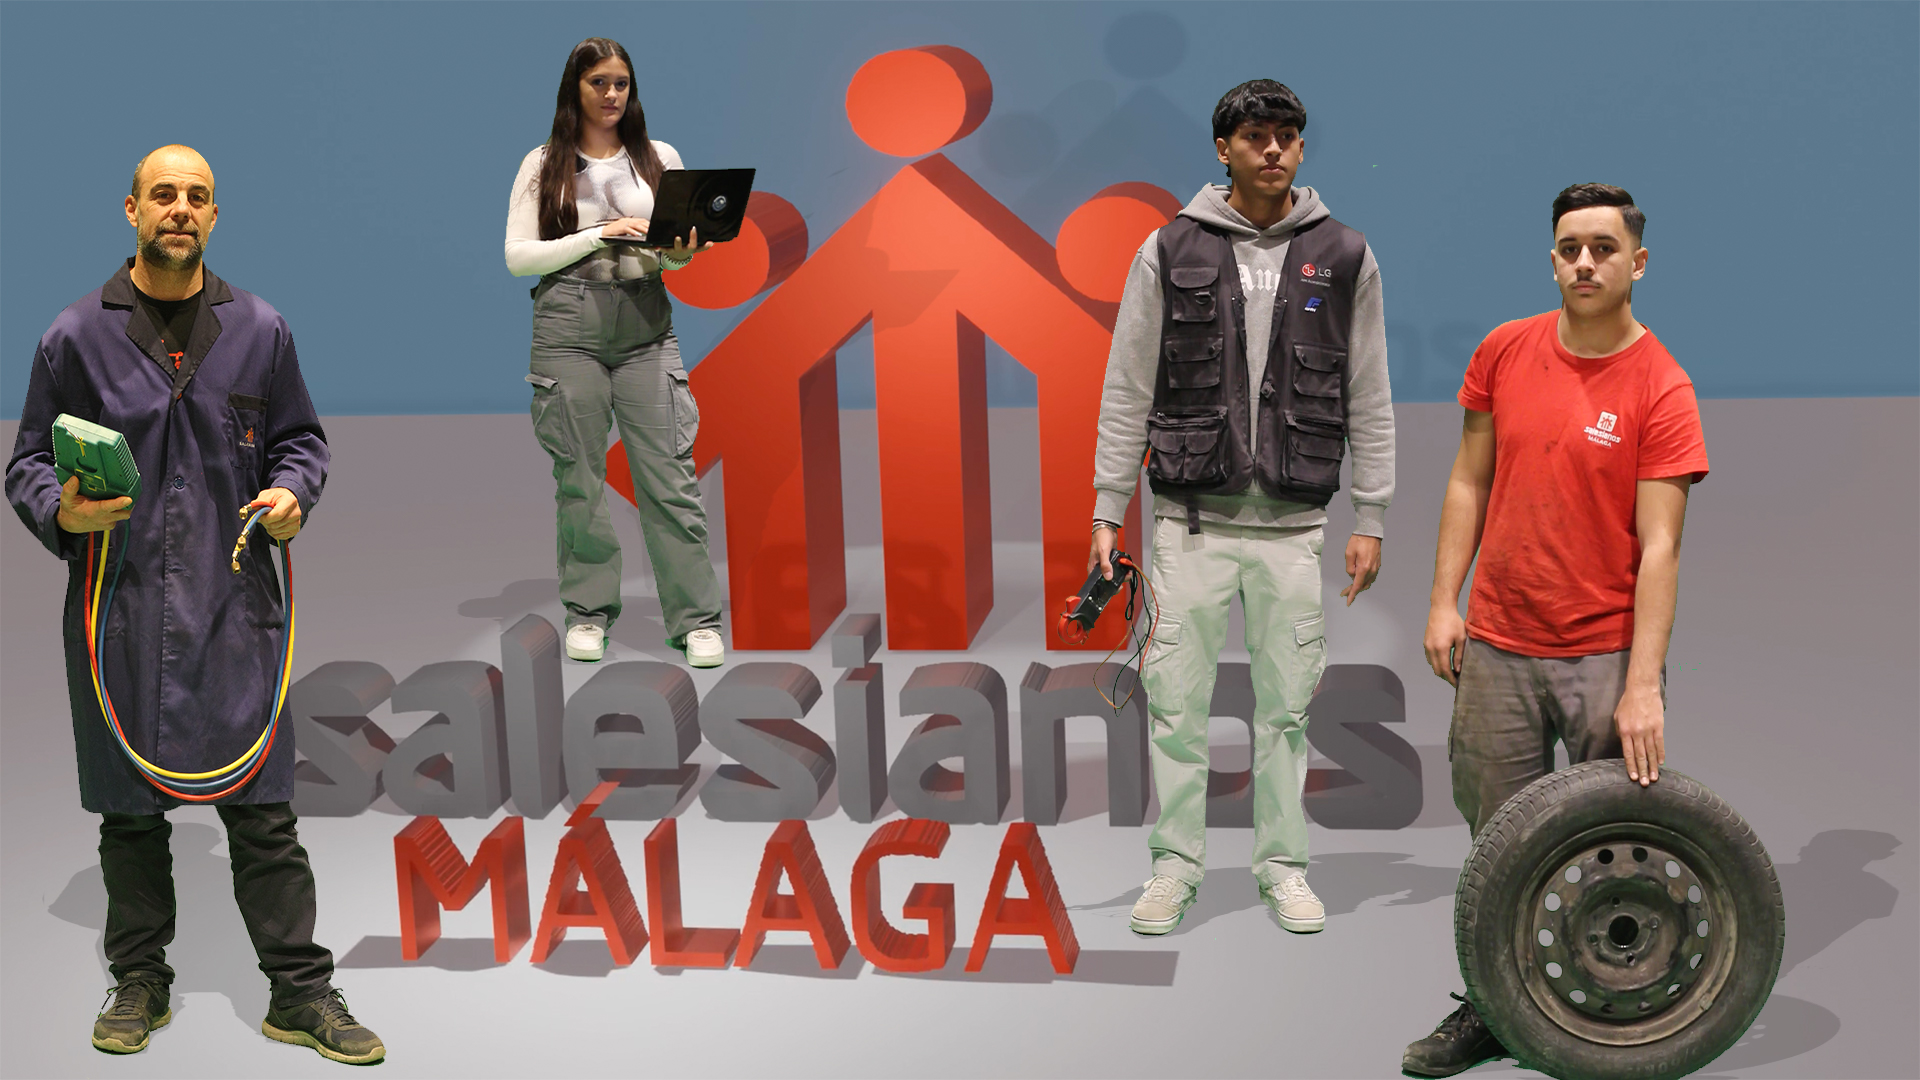 ¡Explora Tu Futuro en Salesianos Málaga! Jornada de Puertas Abiertas para Ciclos Formativos